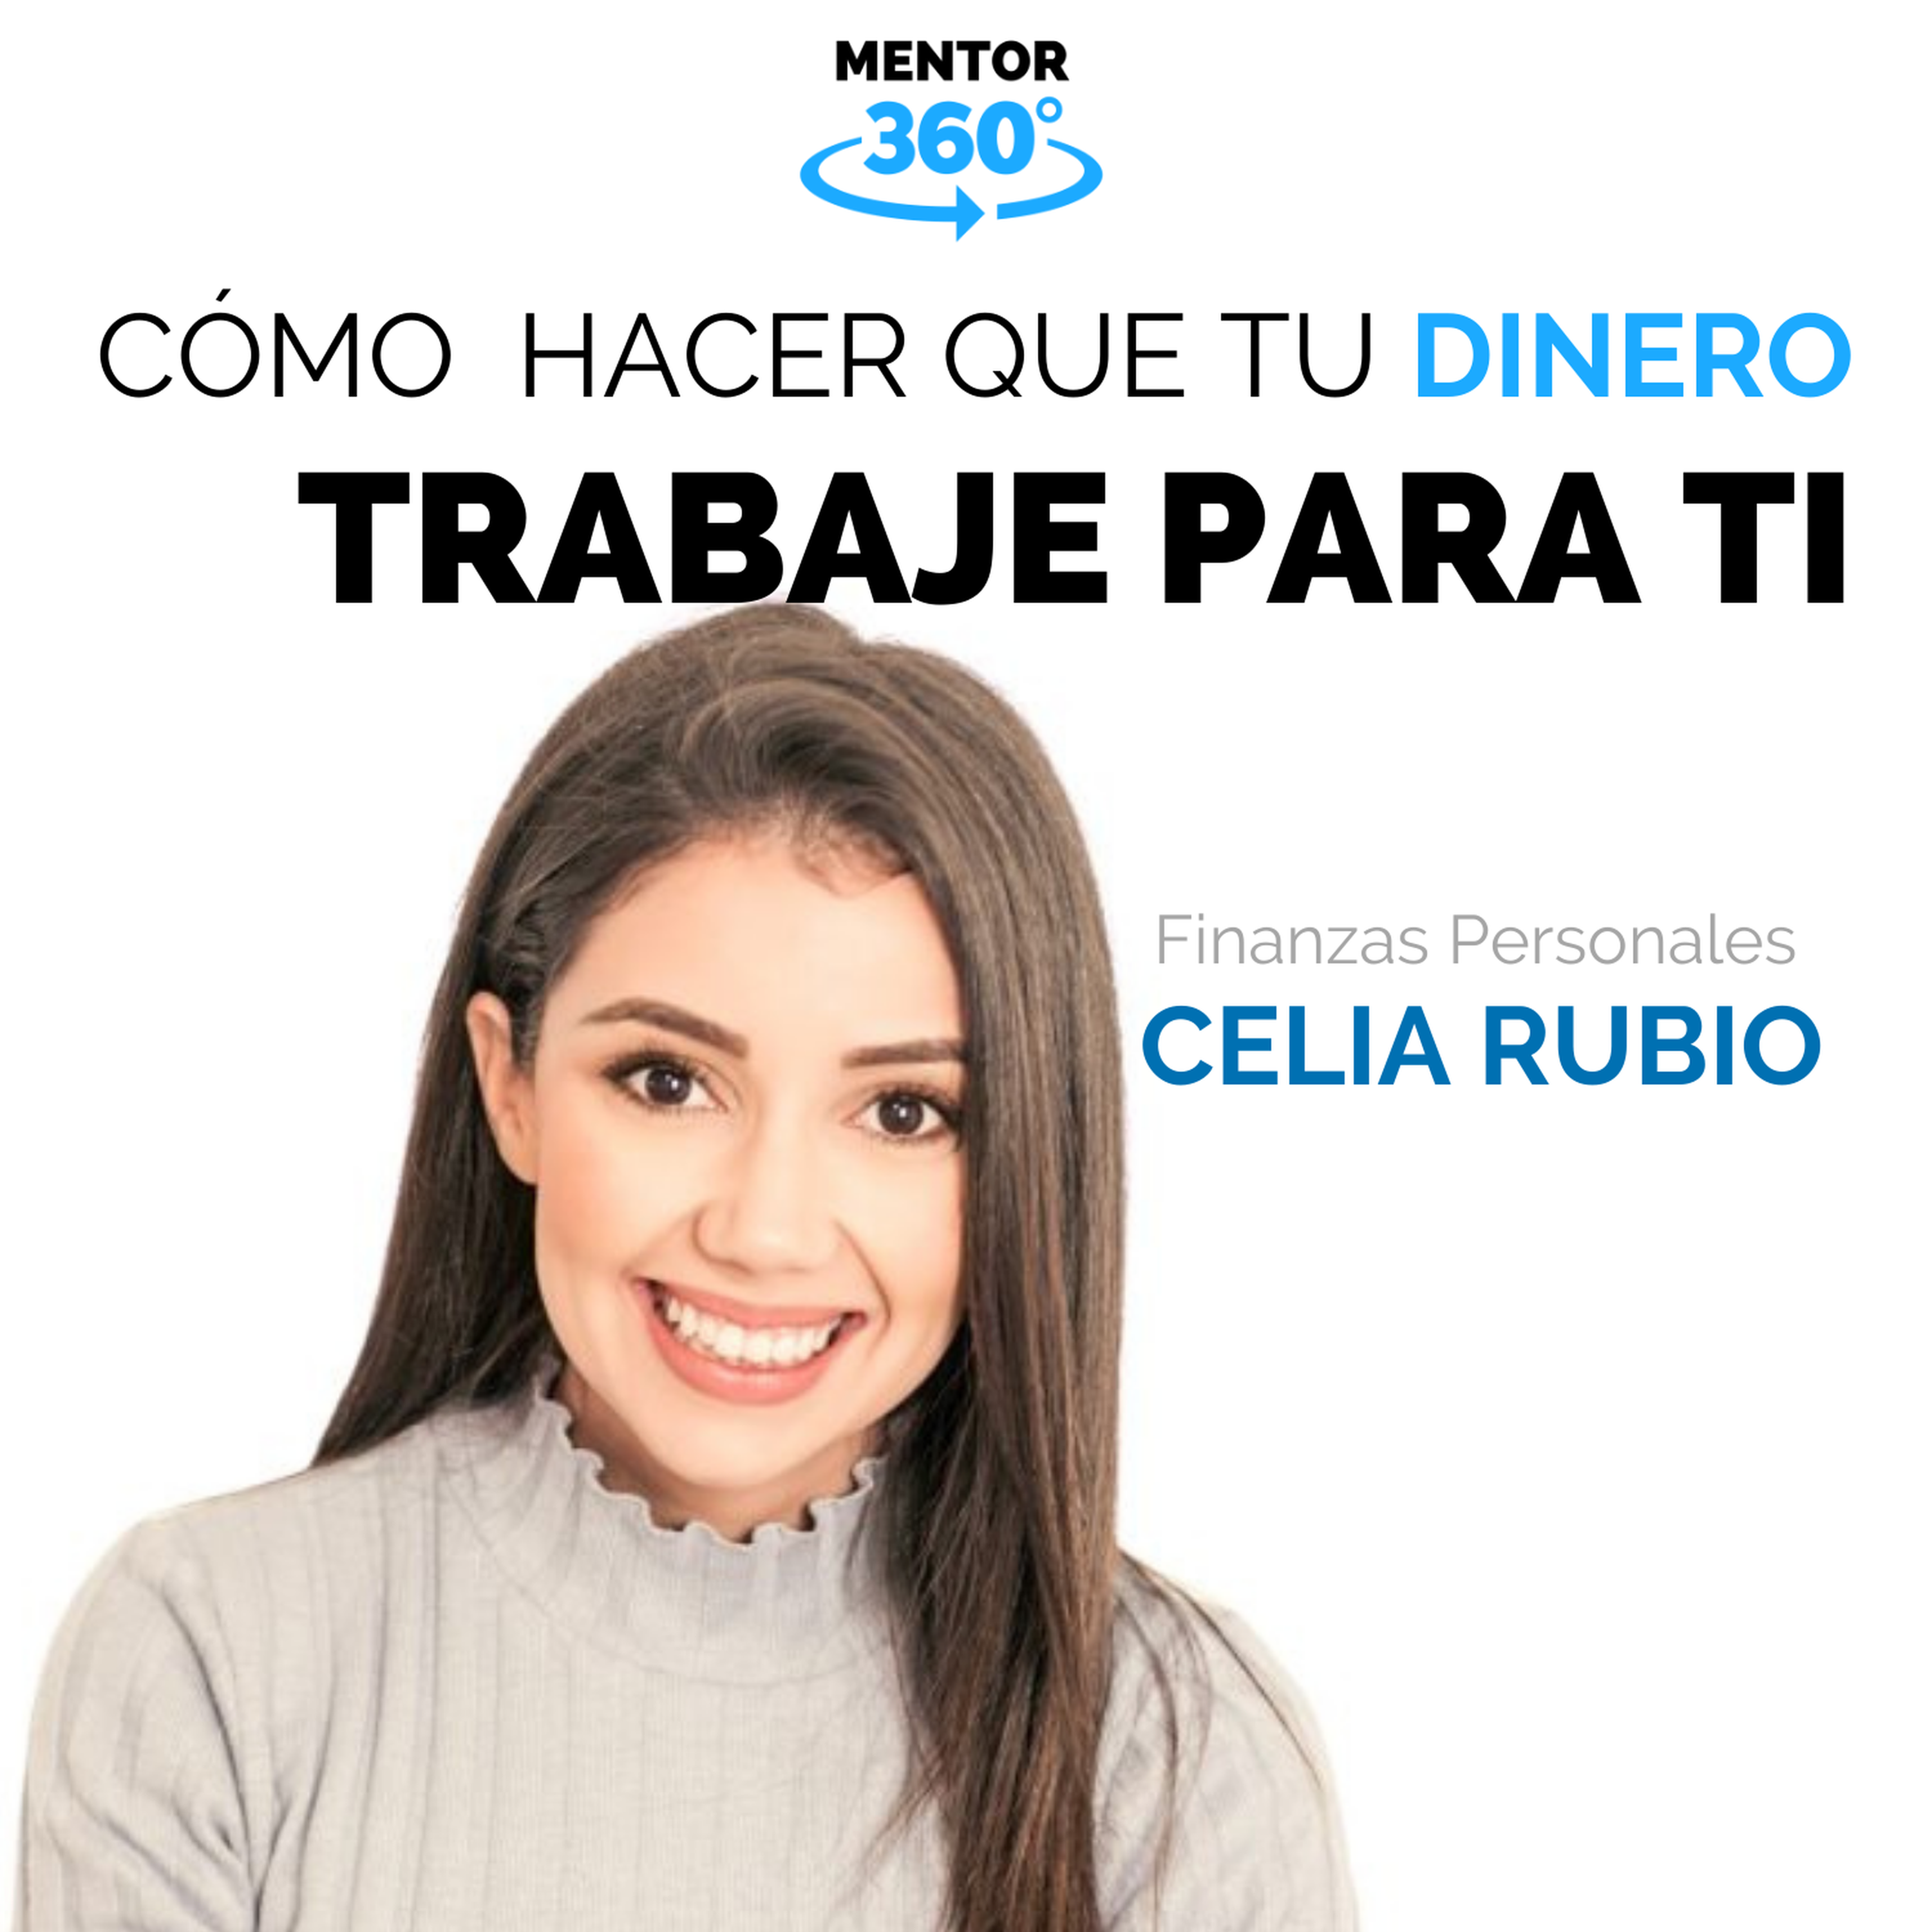 Cómo Hacer Que Tu Dinero Trabaje Para Ti - Celia Rubio - Finanzas Personales - MENTOR360